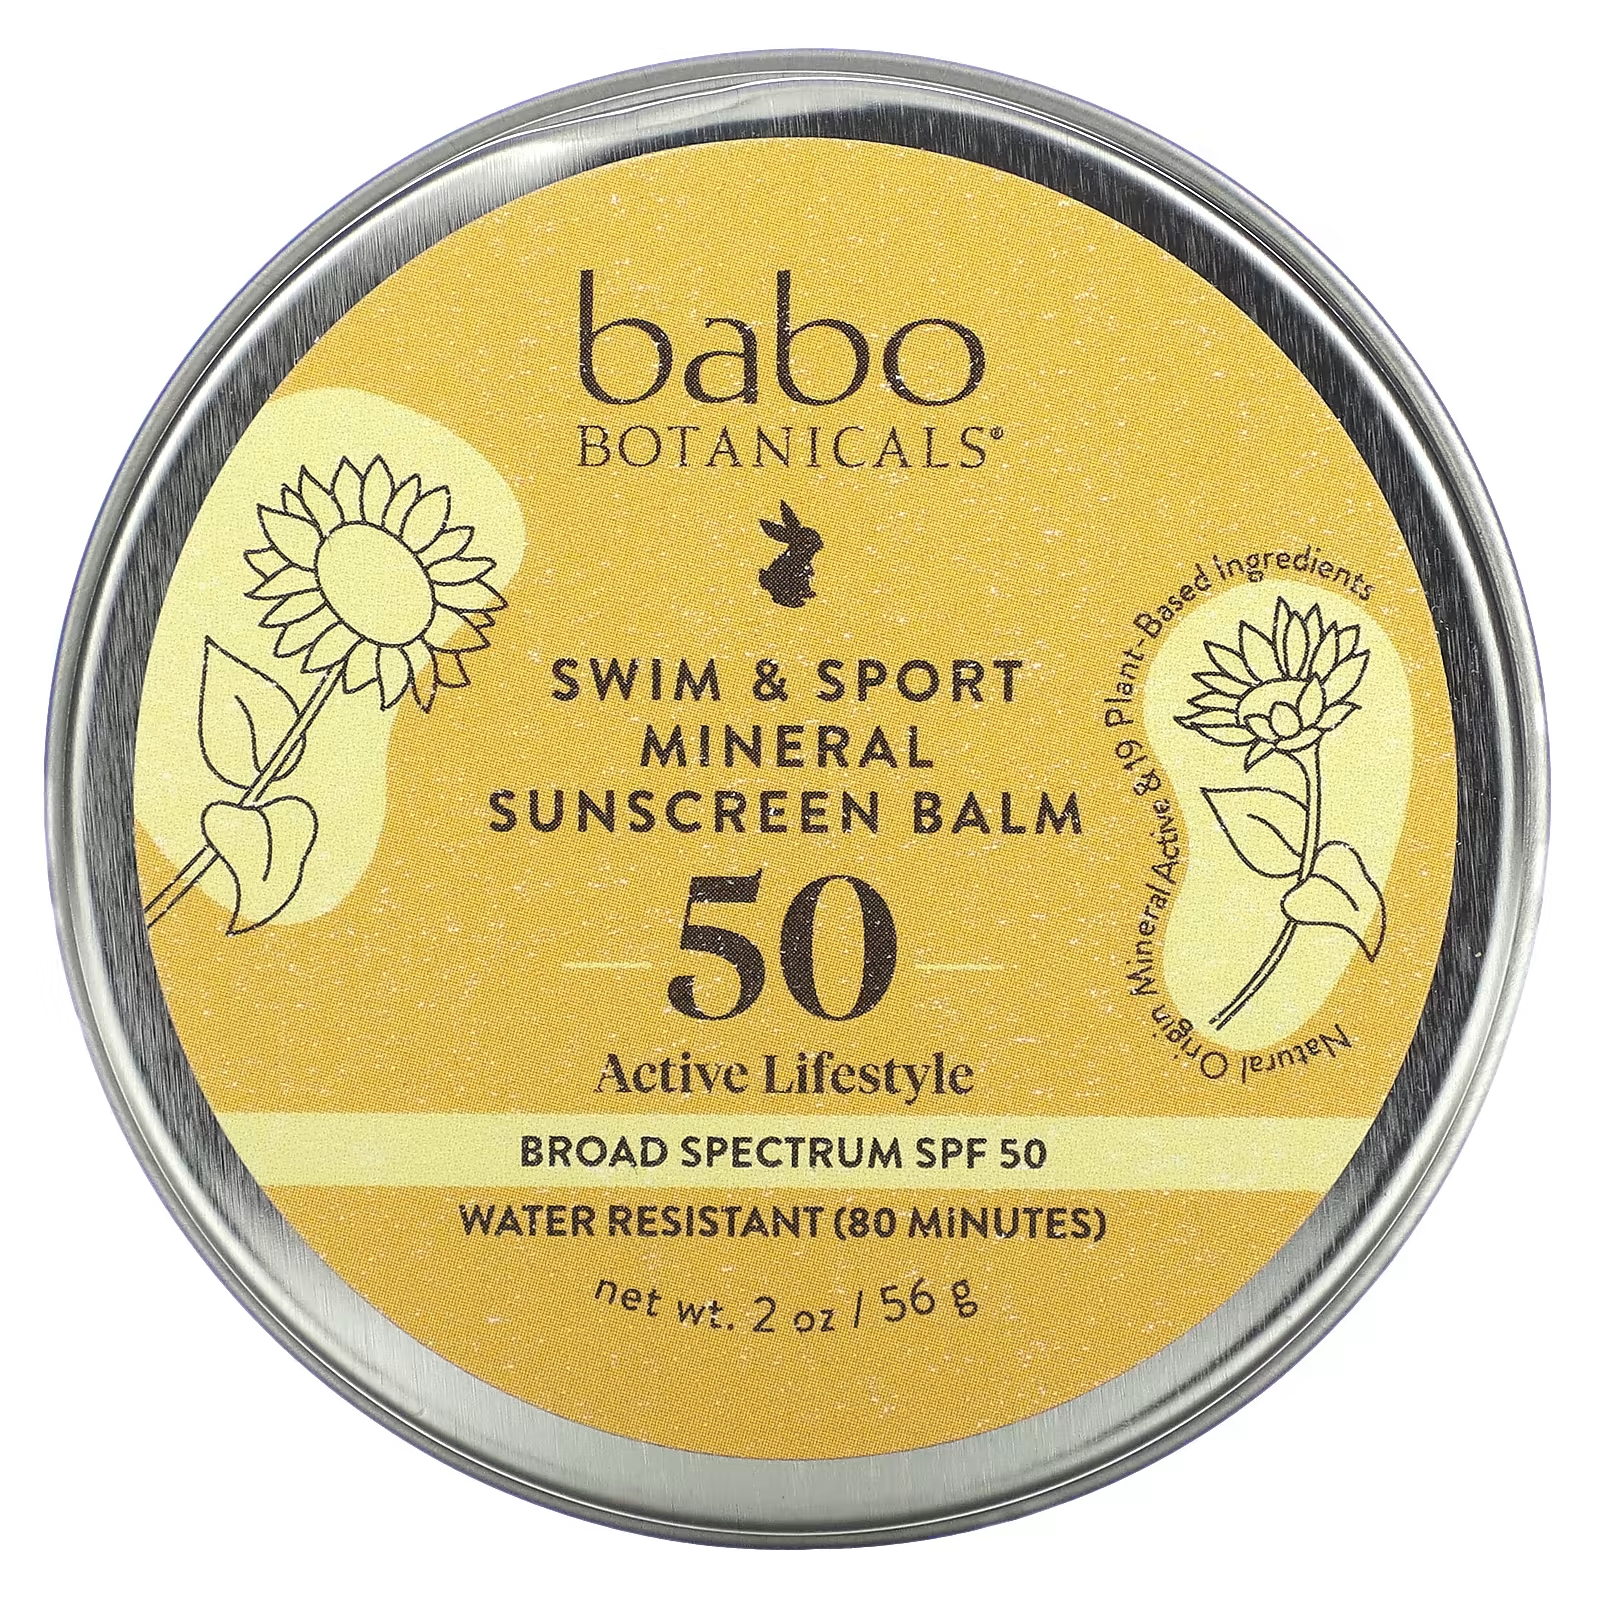 Минеральный солнцезащитный бальзам Babo Botanicals SPF 50, для плавания и спорта, без запаха, 56 гр.